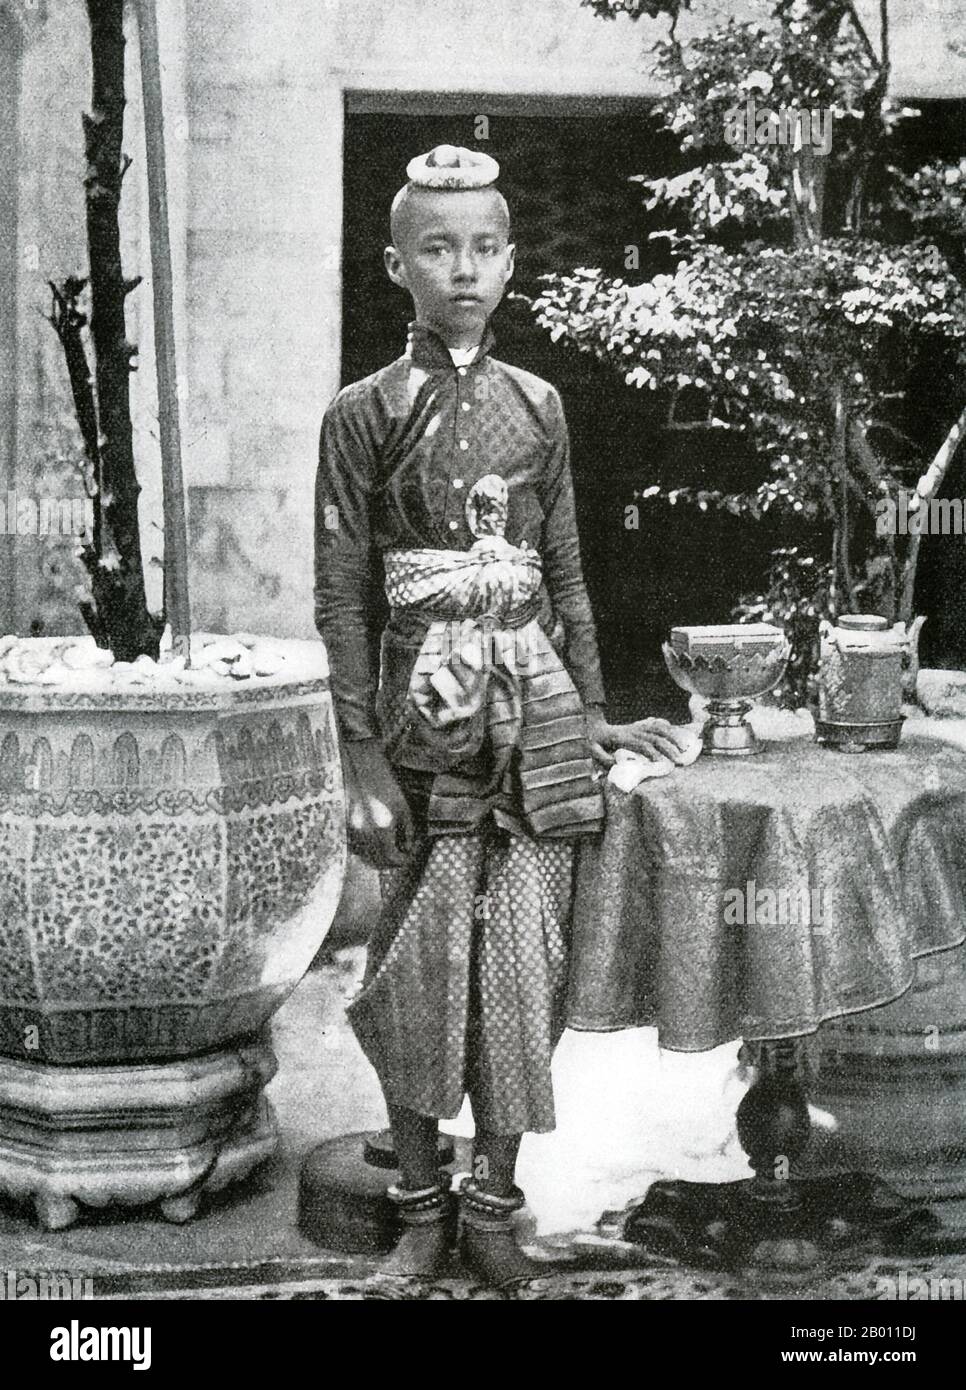 Thaïlande: Le roi Chulalongkorn comme jeune prince, Siam. Photo de John Thomson (1837-1921), ch. 1865. Le roi Chulalongkorn, Rama V (1853–1910) était le cinquième monarque de Siam sous la Maison de Chakri. Il accède au trône à l'âge de 15 ans après la mort de son père, le roi Mongkut, Rama IV Le roi Chulalongkorn est considéré comme l'un des plus grands rois de Siam. Son règne a été caractérisé par la modernisation du pays, y compris des réformes gouvernementales et sociales majeures. On lui attribue également le mérite d'avoir sauvé Siam d'être colonisé. Banque D'Images